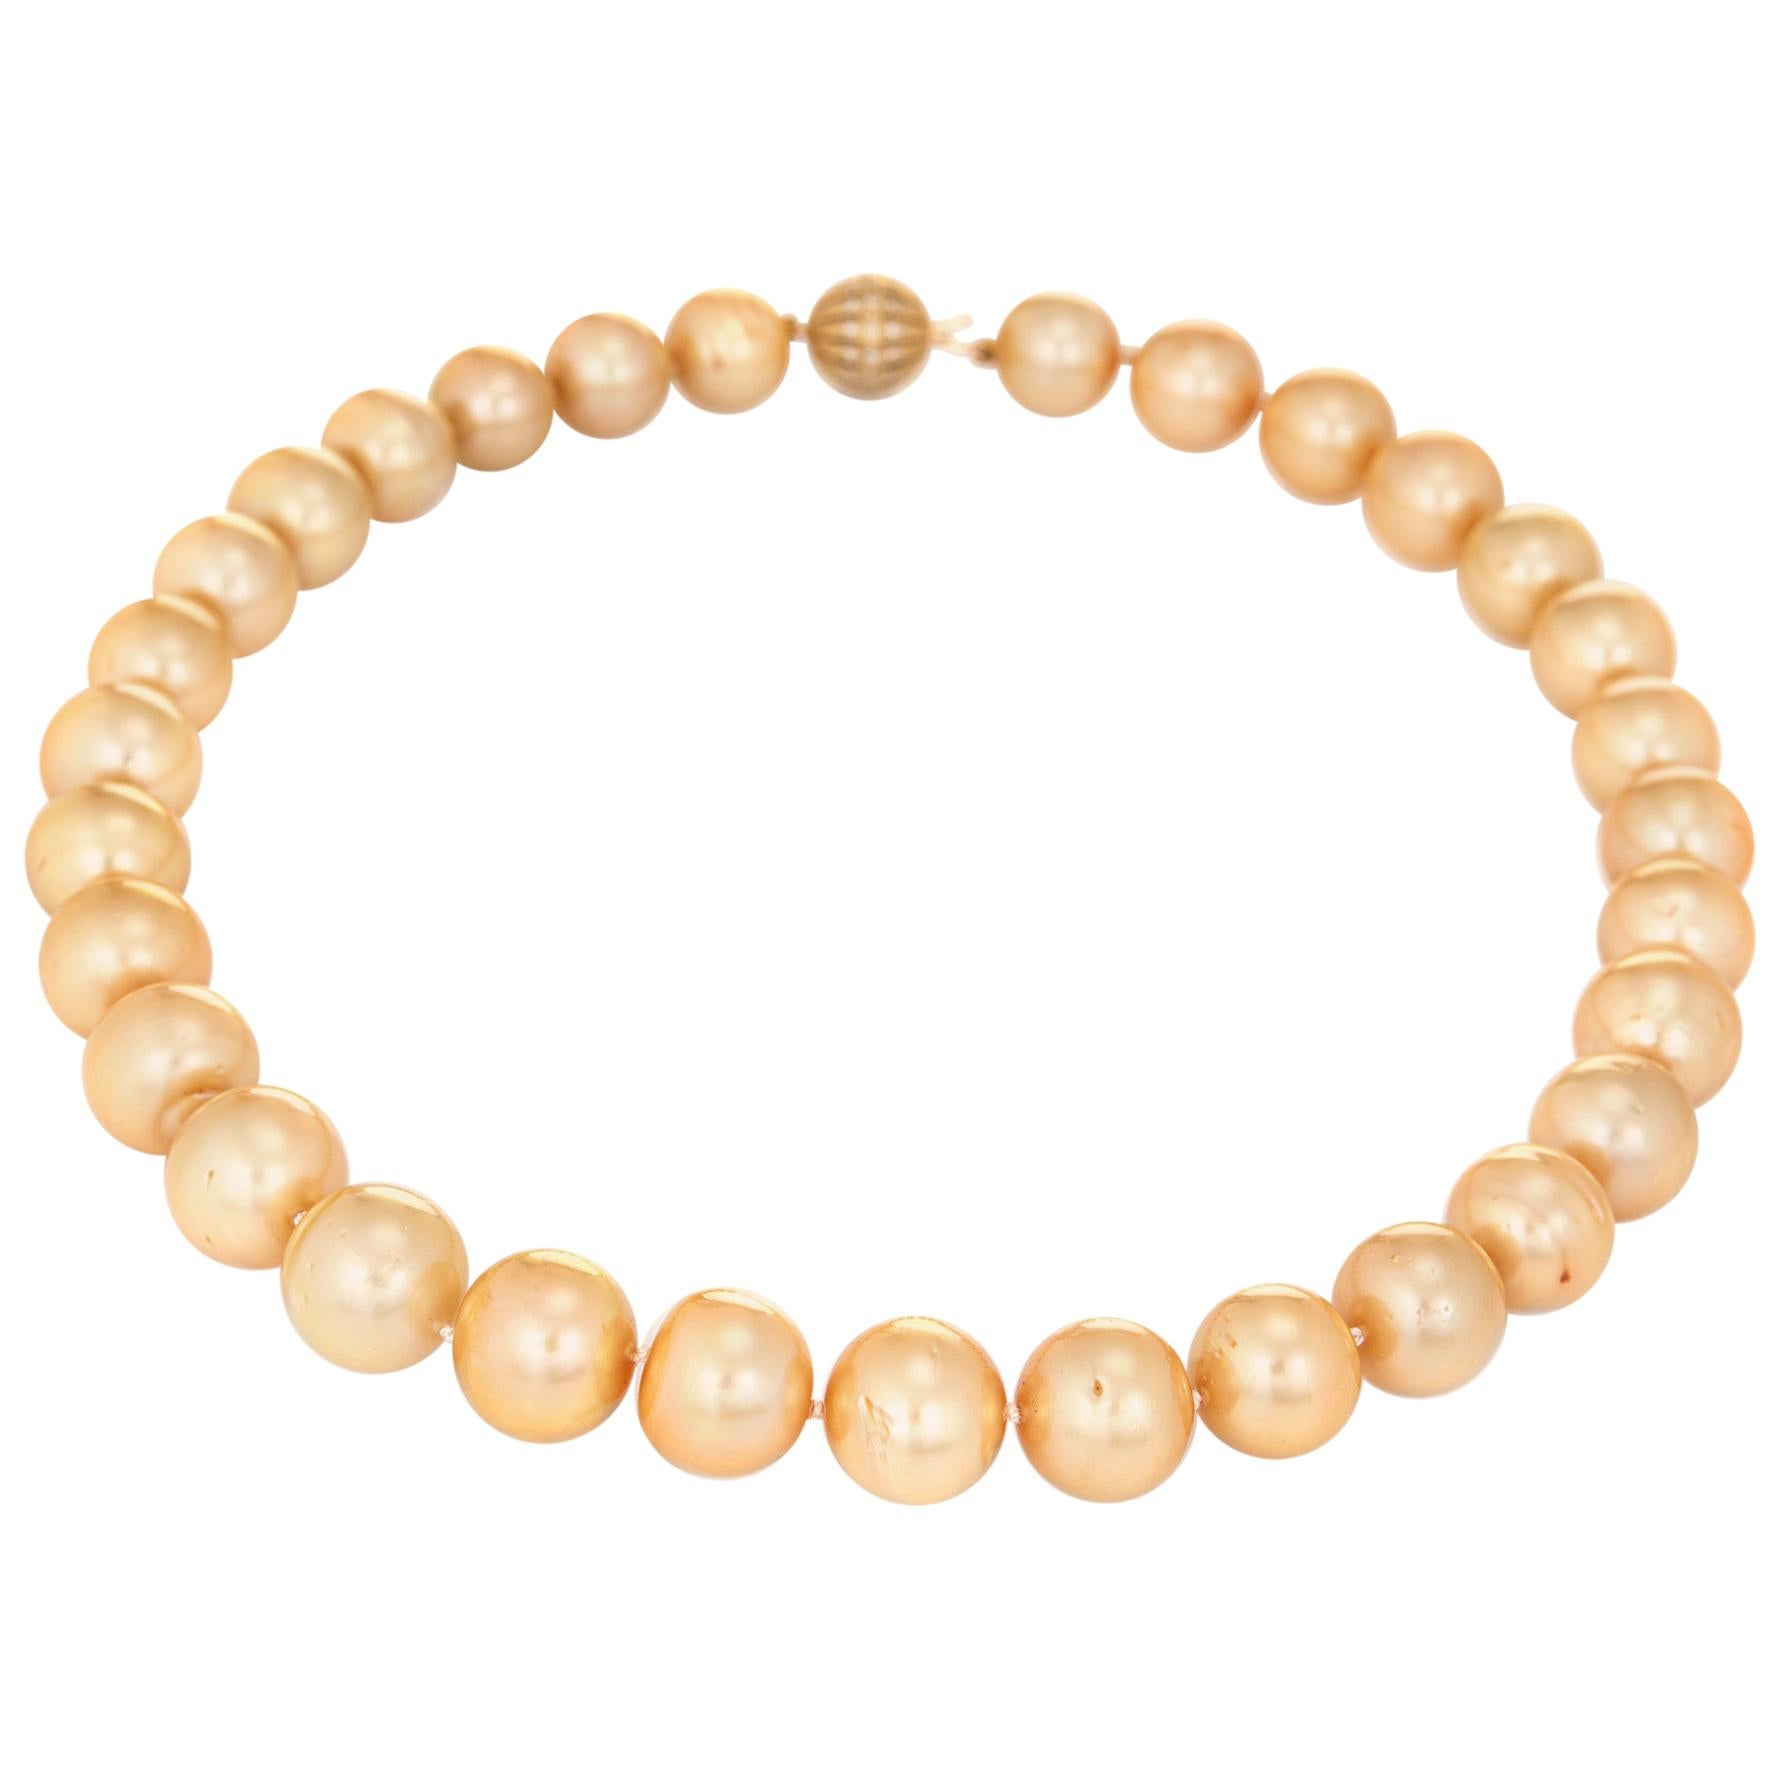 Collier de perles des mers du Sud dorées avec fermoir en diamants et or 14 carats, ancienne propriété